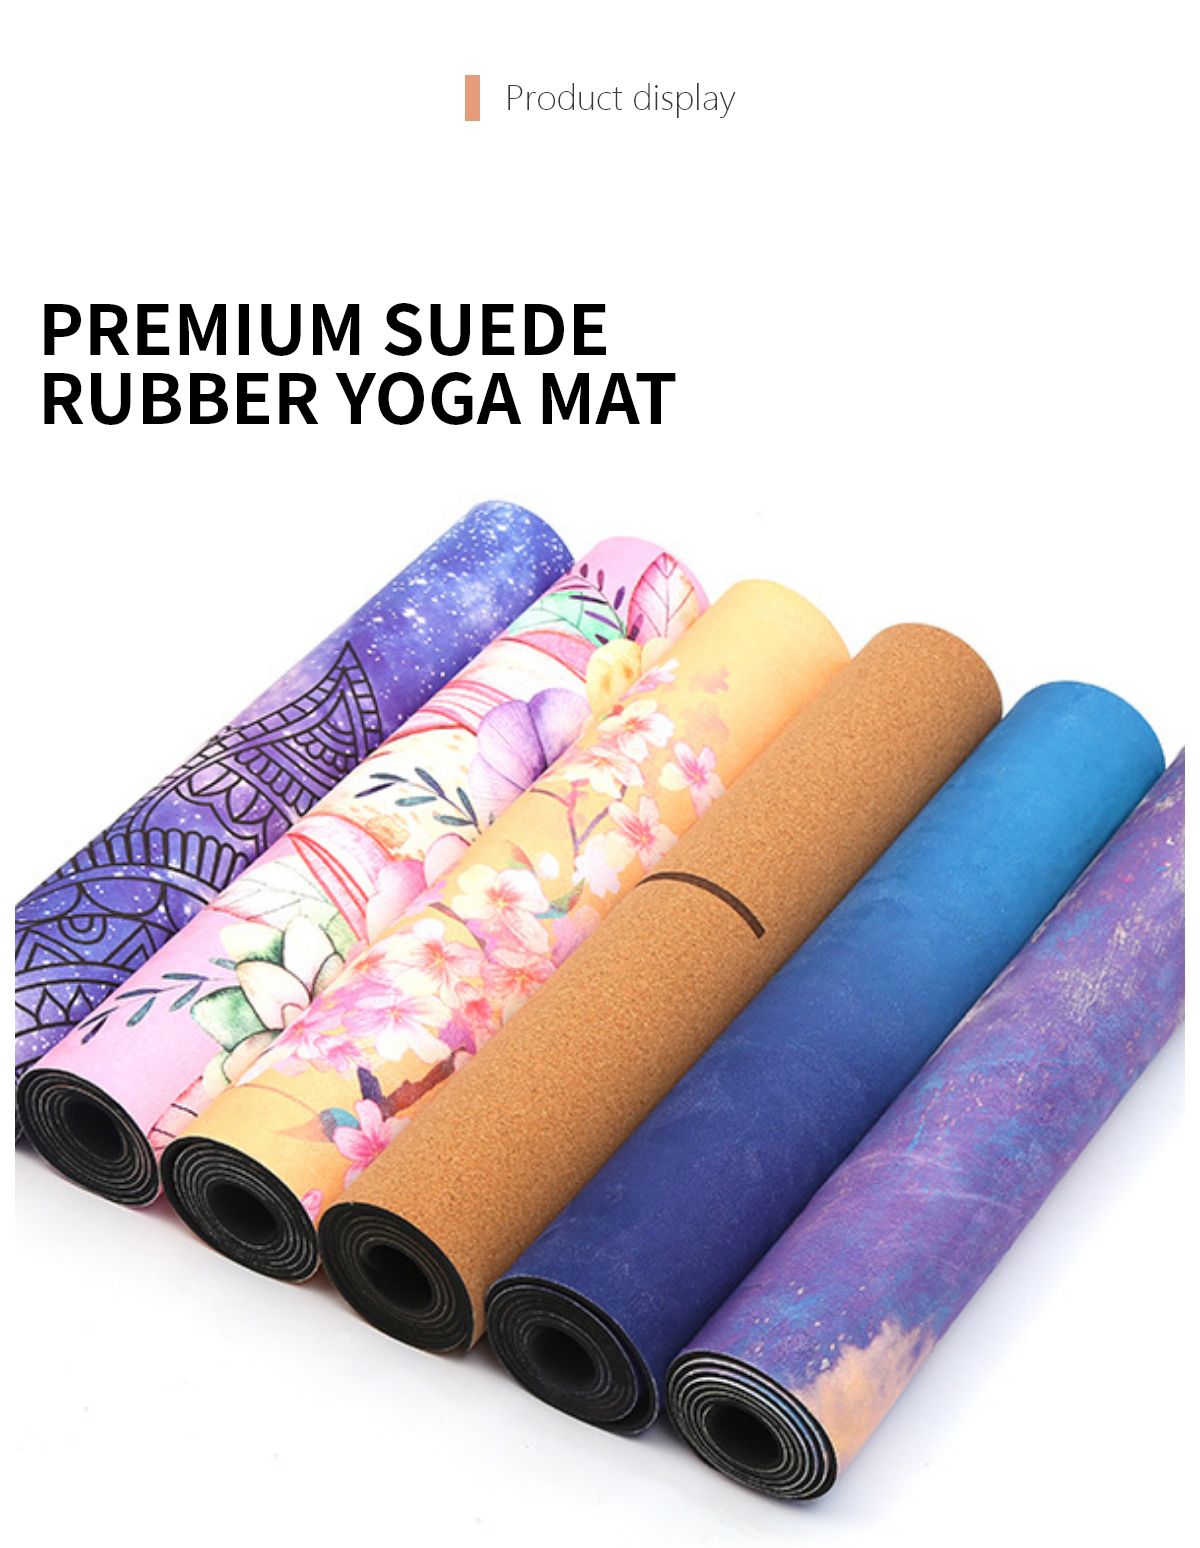 Premium Suede Rubber Yoga Mat